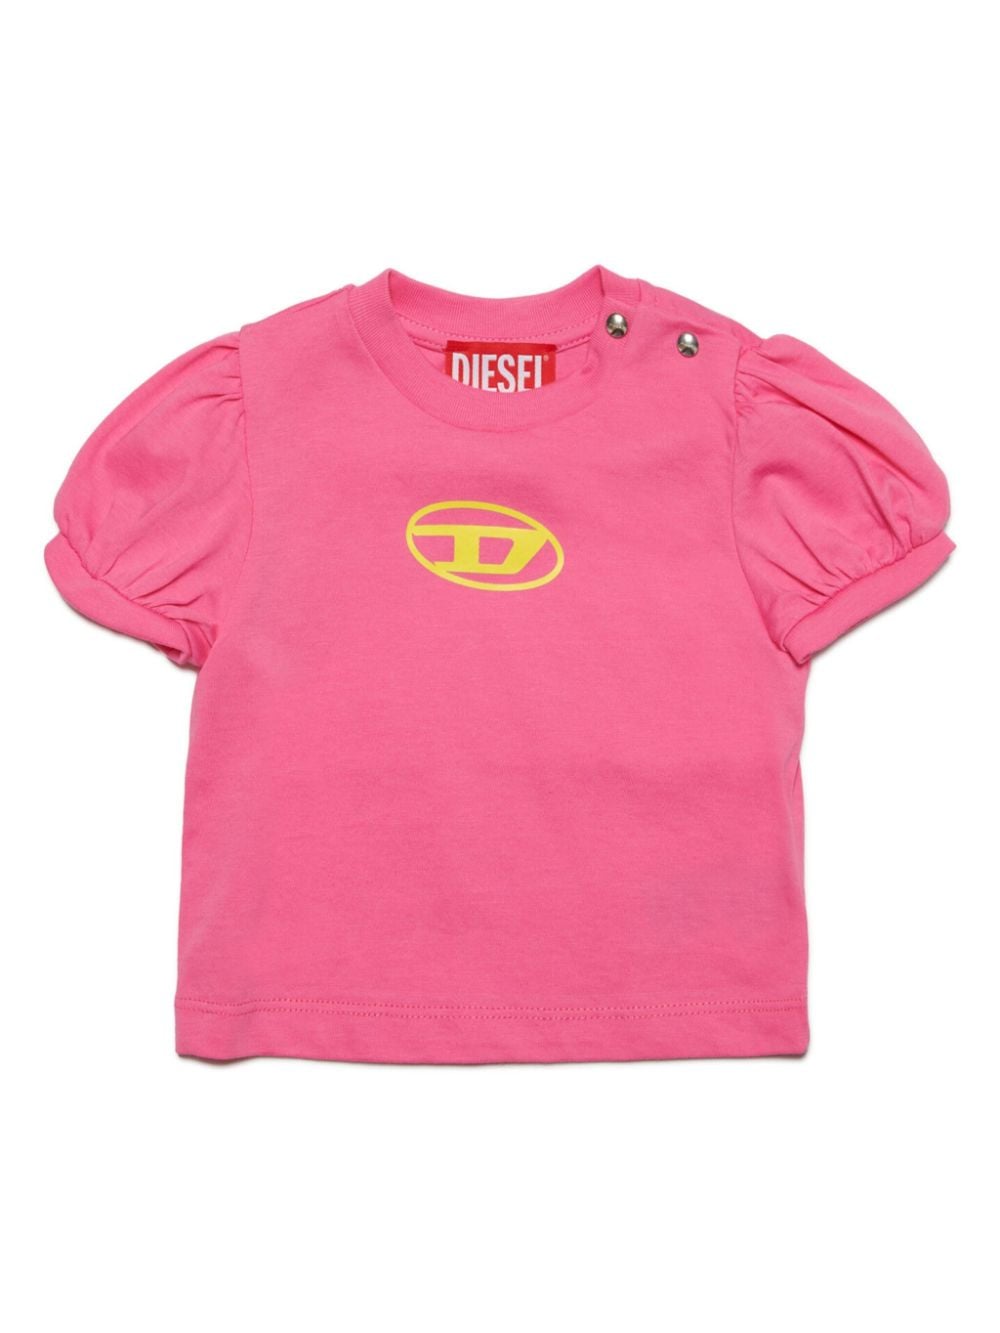 Diesel Kids Oval D-print cotton T-shirt - Pink von Diesel Kids